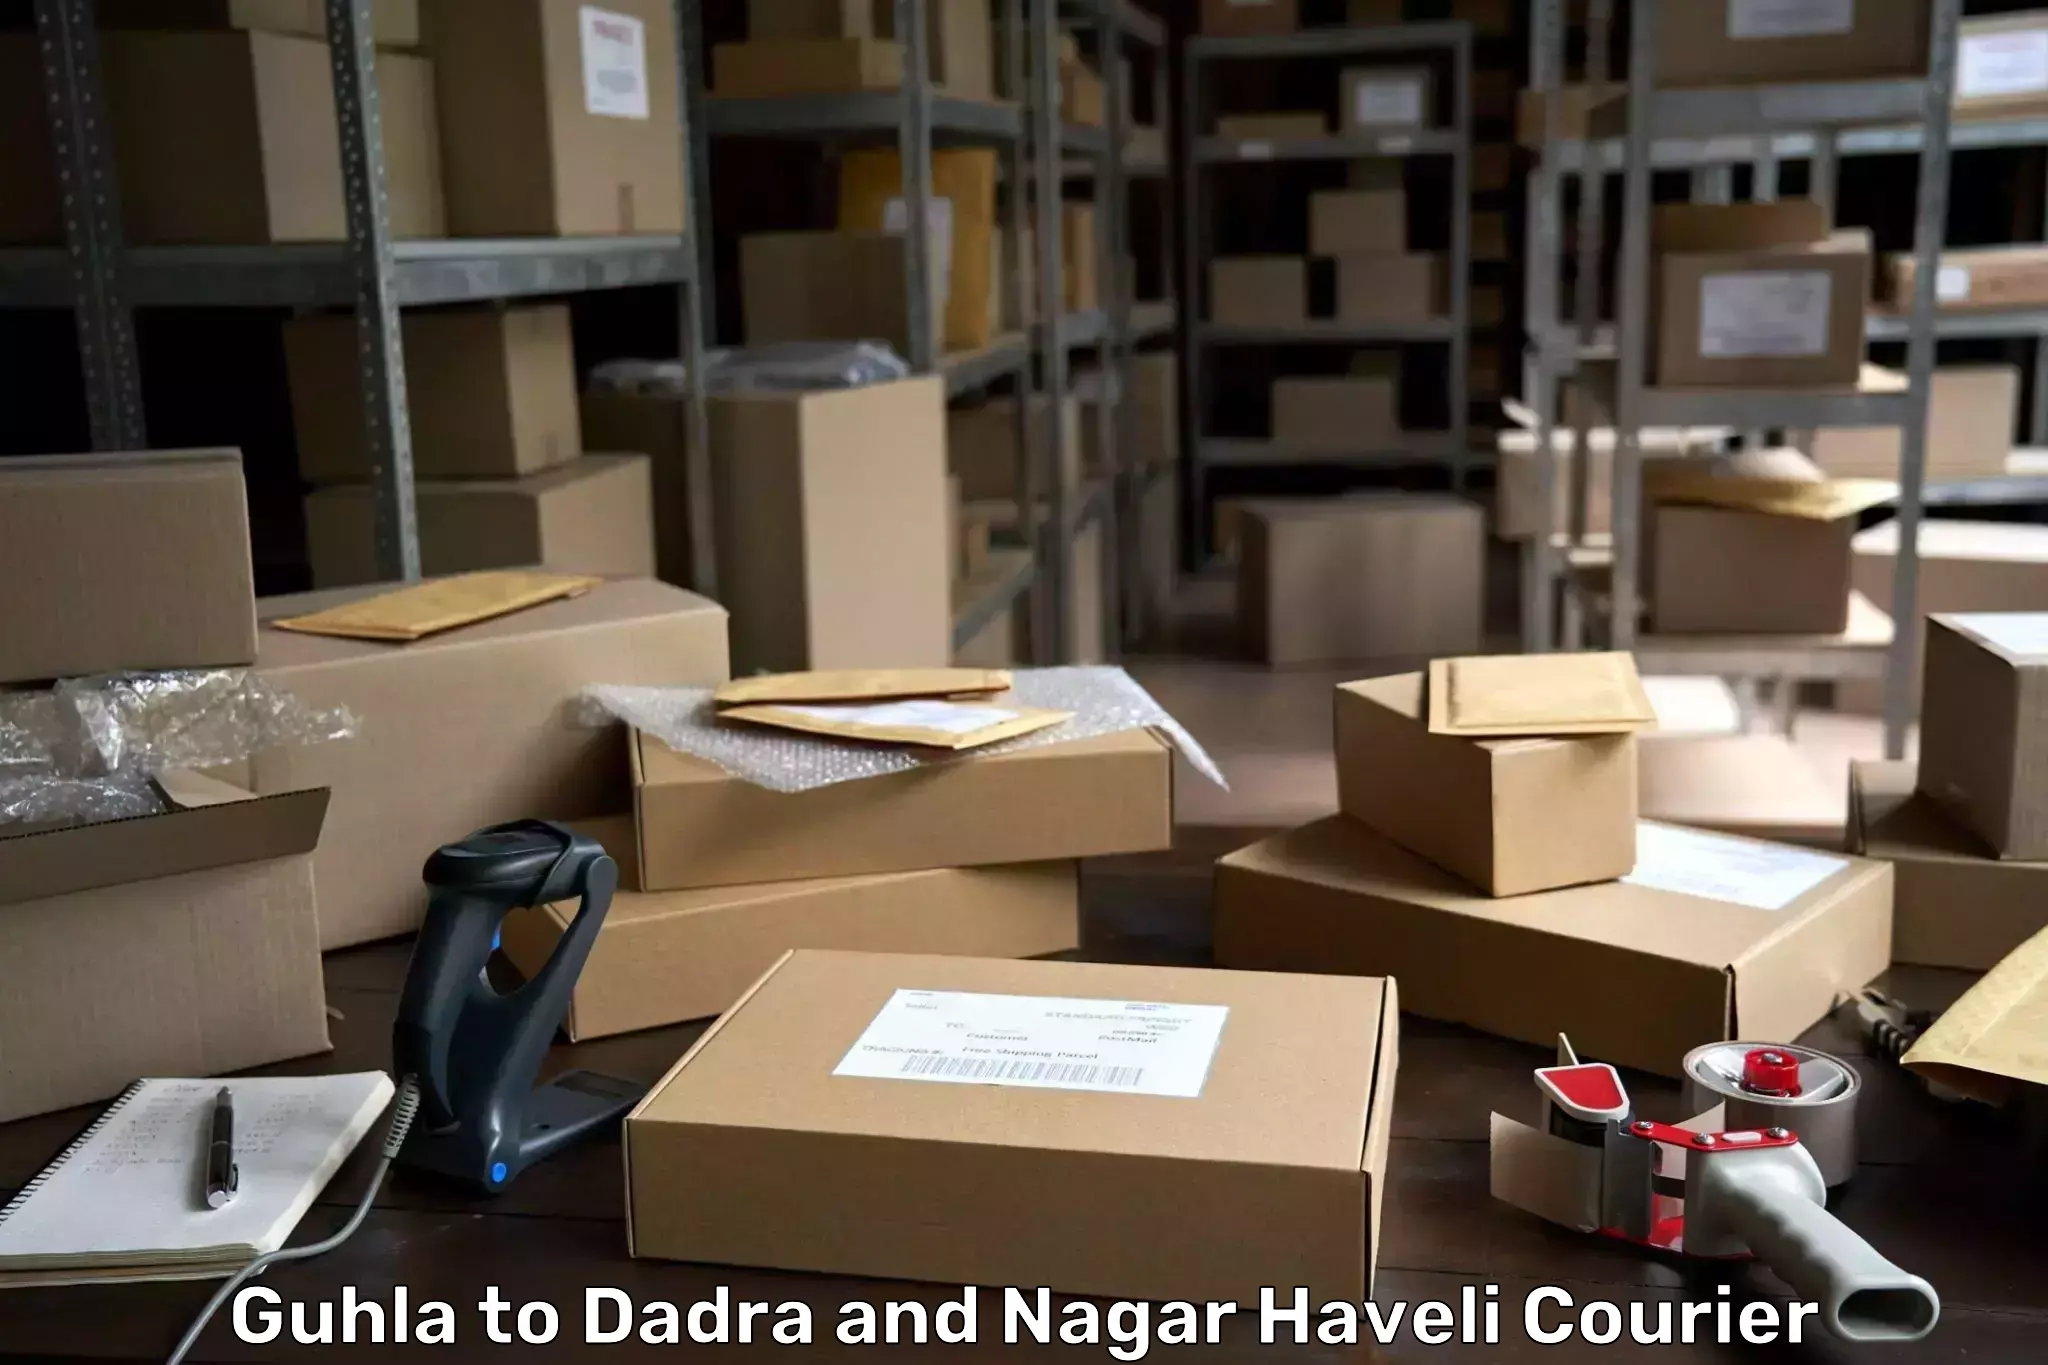 Shipping and handling Guhla to Dadra and Nagar Haveli